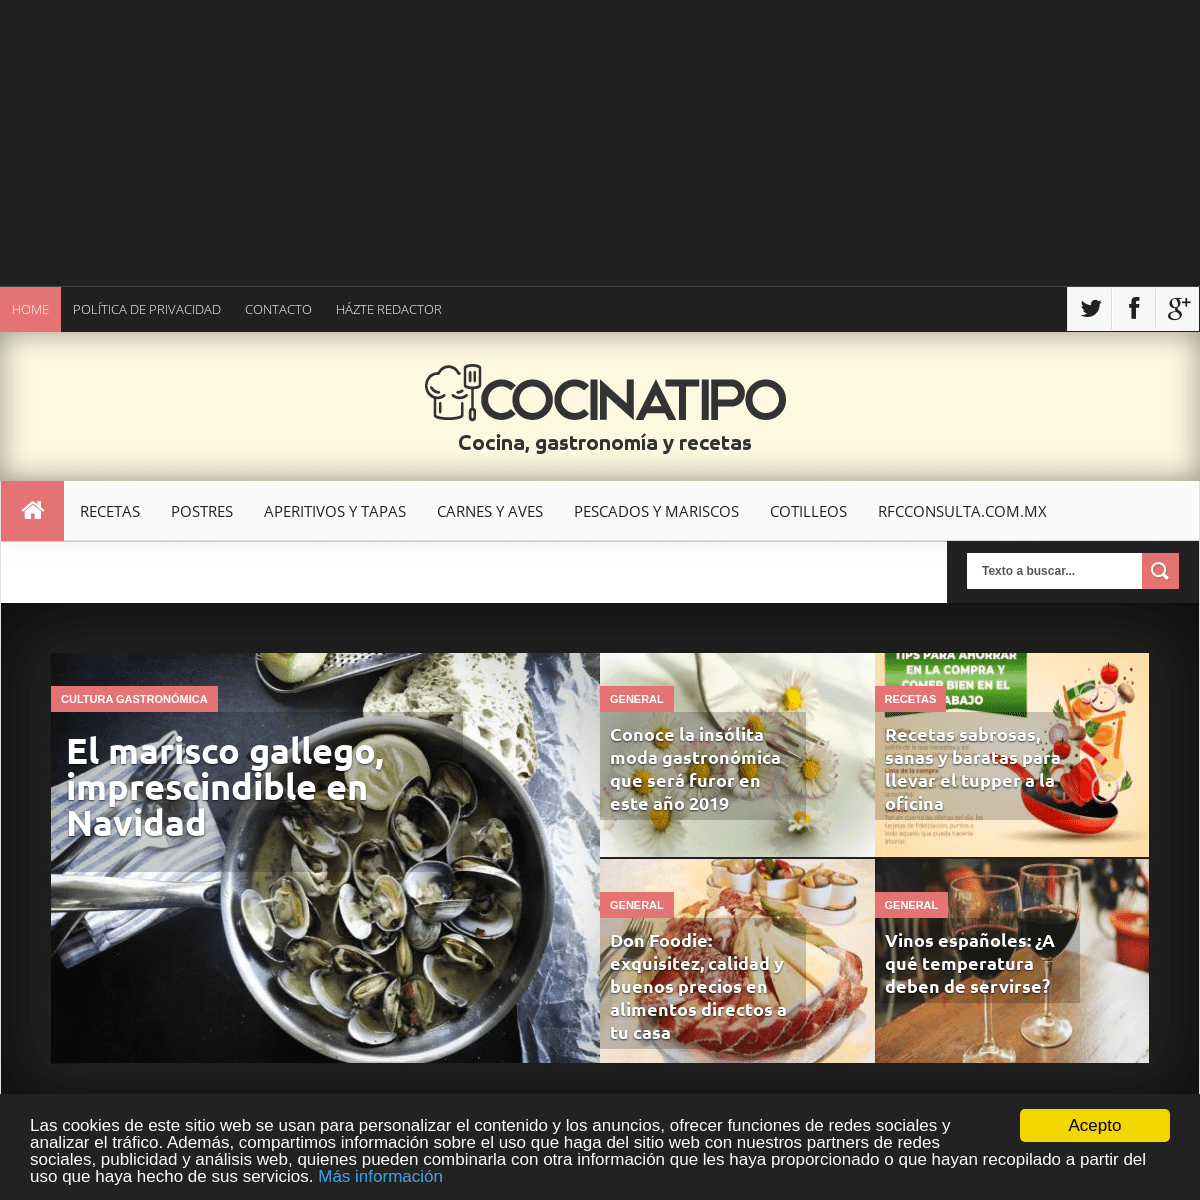 A complete backup of cocinatipo.com